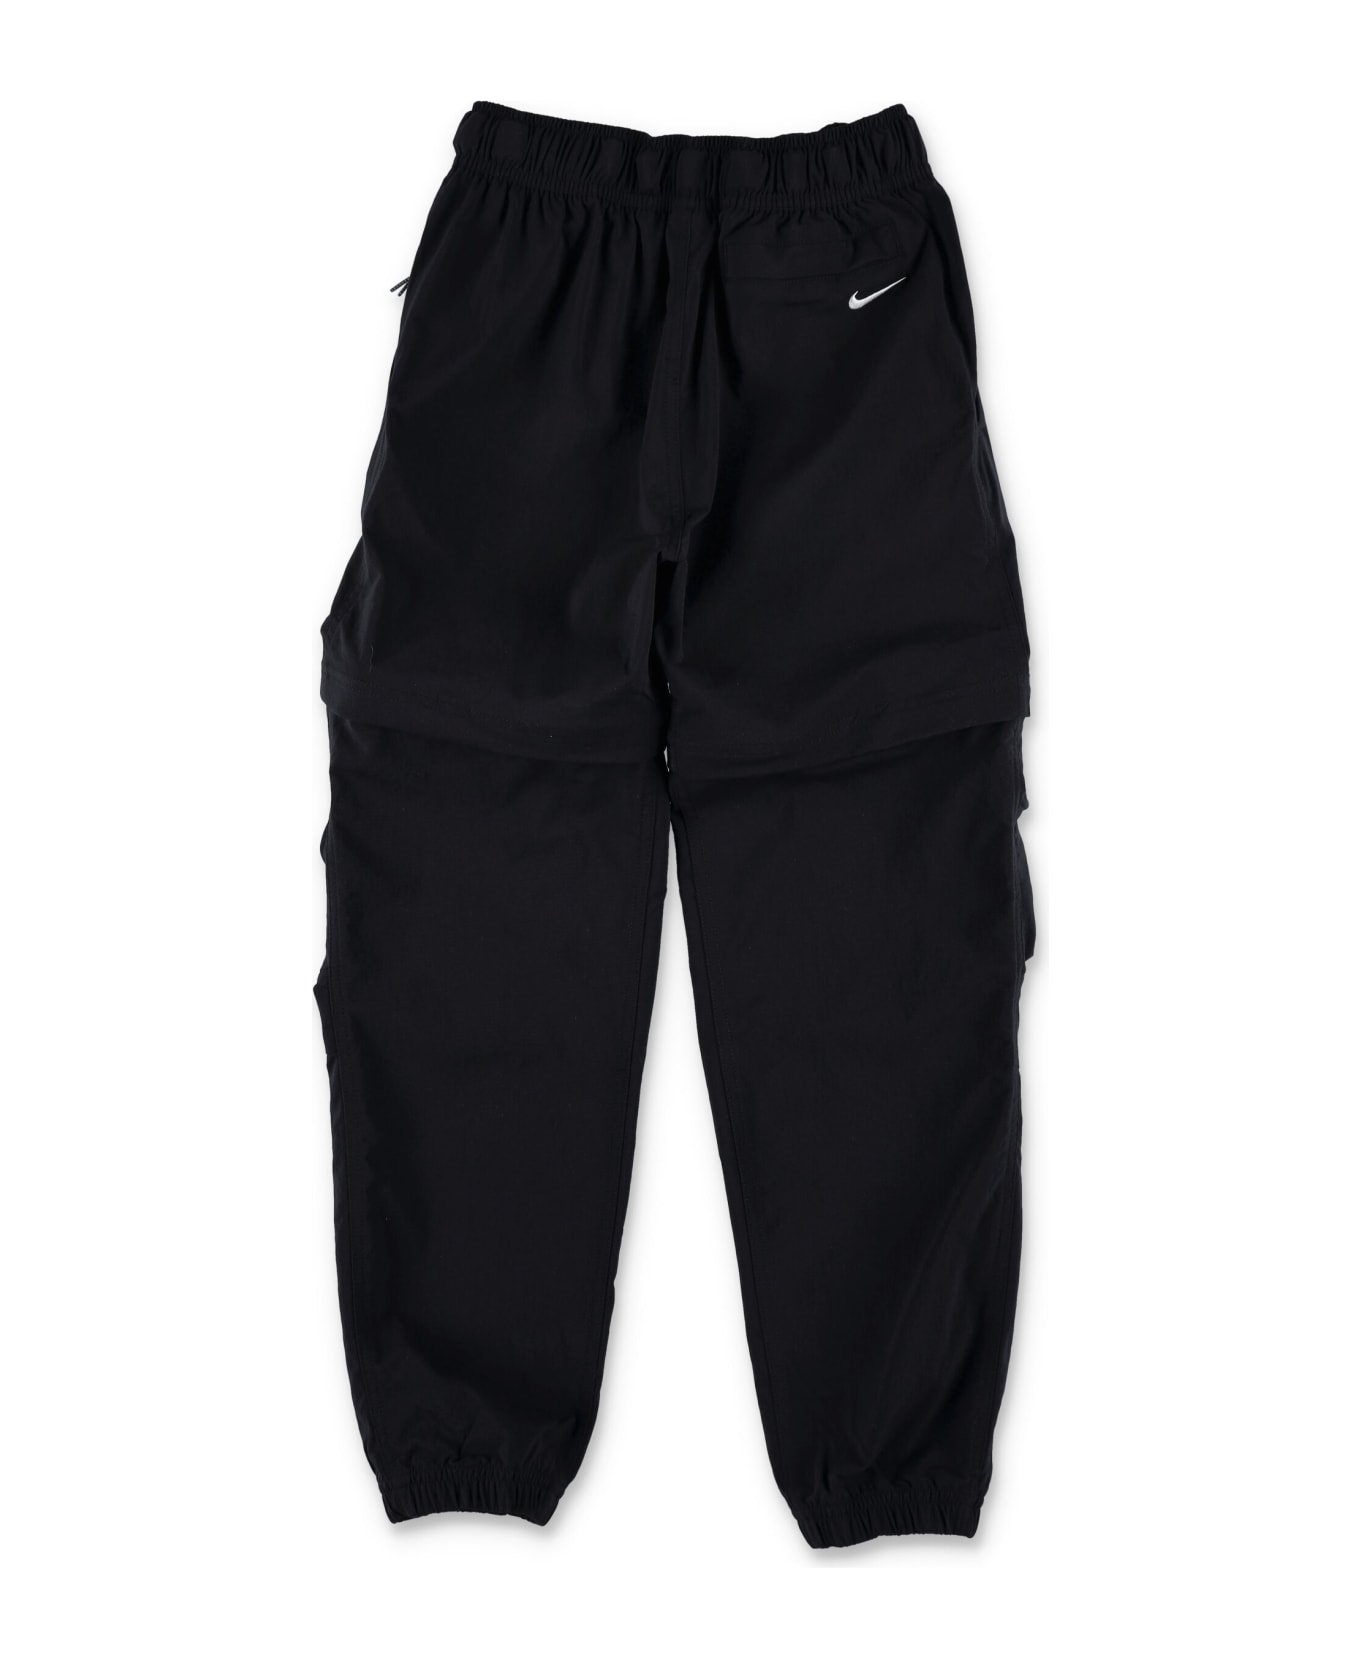 Nike Acg Repel Hike Convertible Pants - BLACK ボトムス